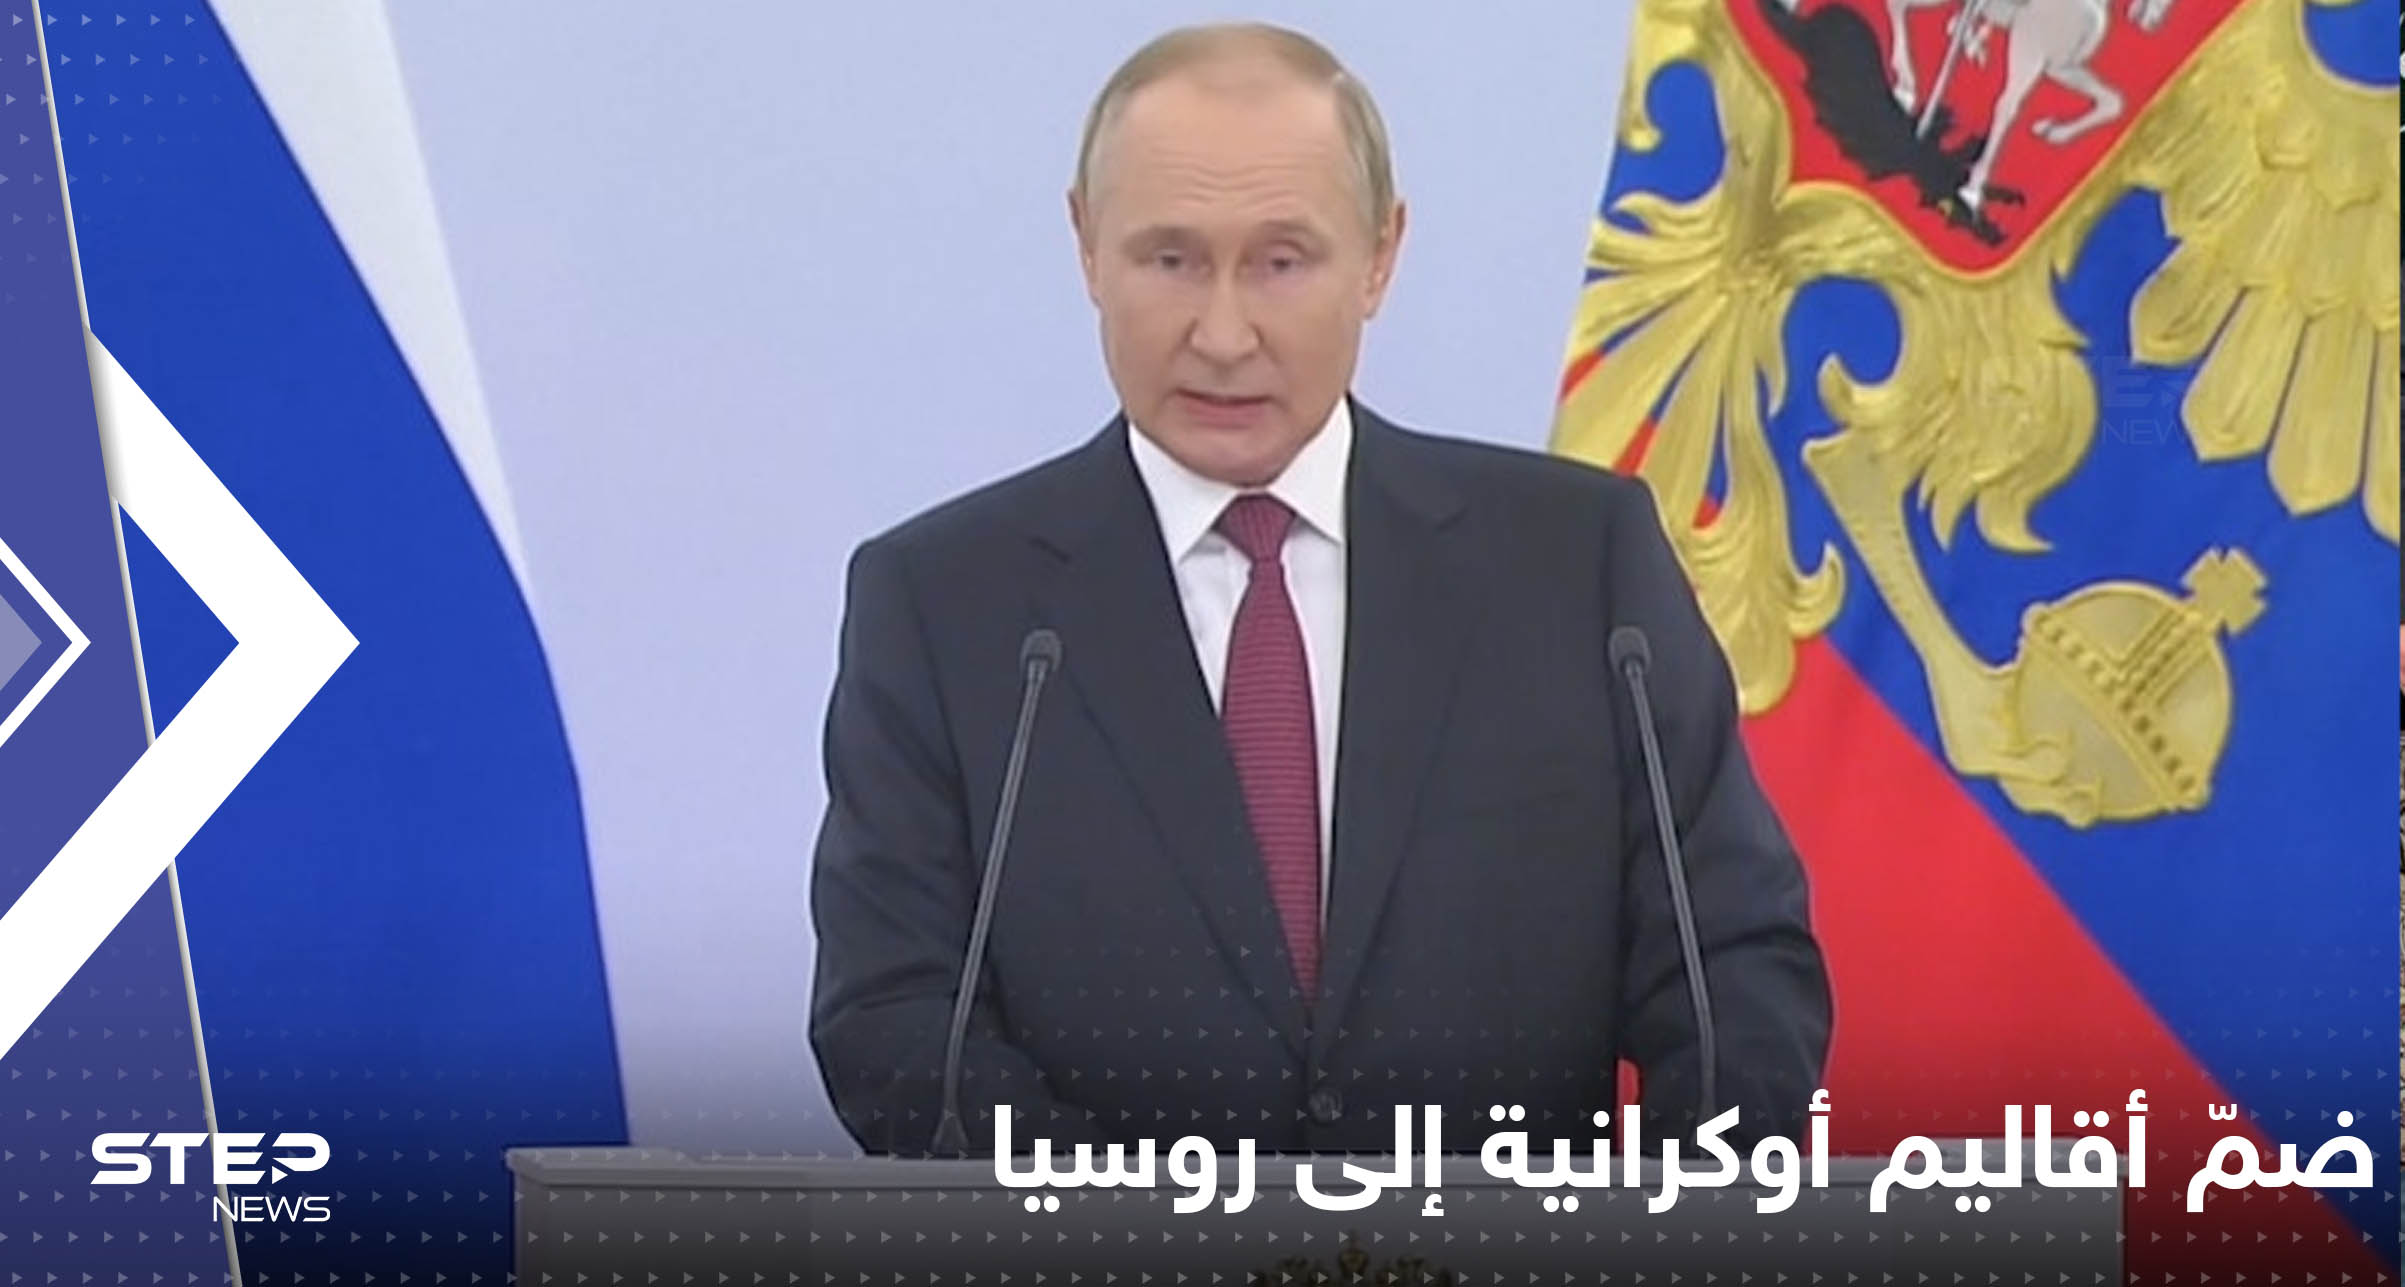 بوتين يعلن ضمّ 4 مناطق جديدة إلى روسيا.. ويوجه رسالة لأوكرانيا